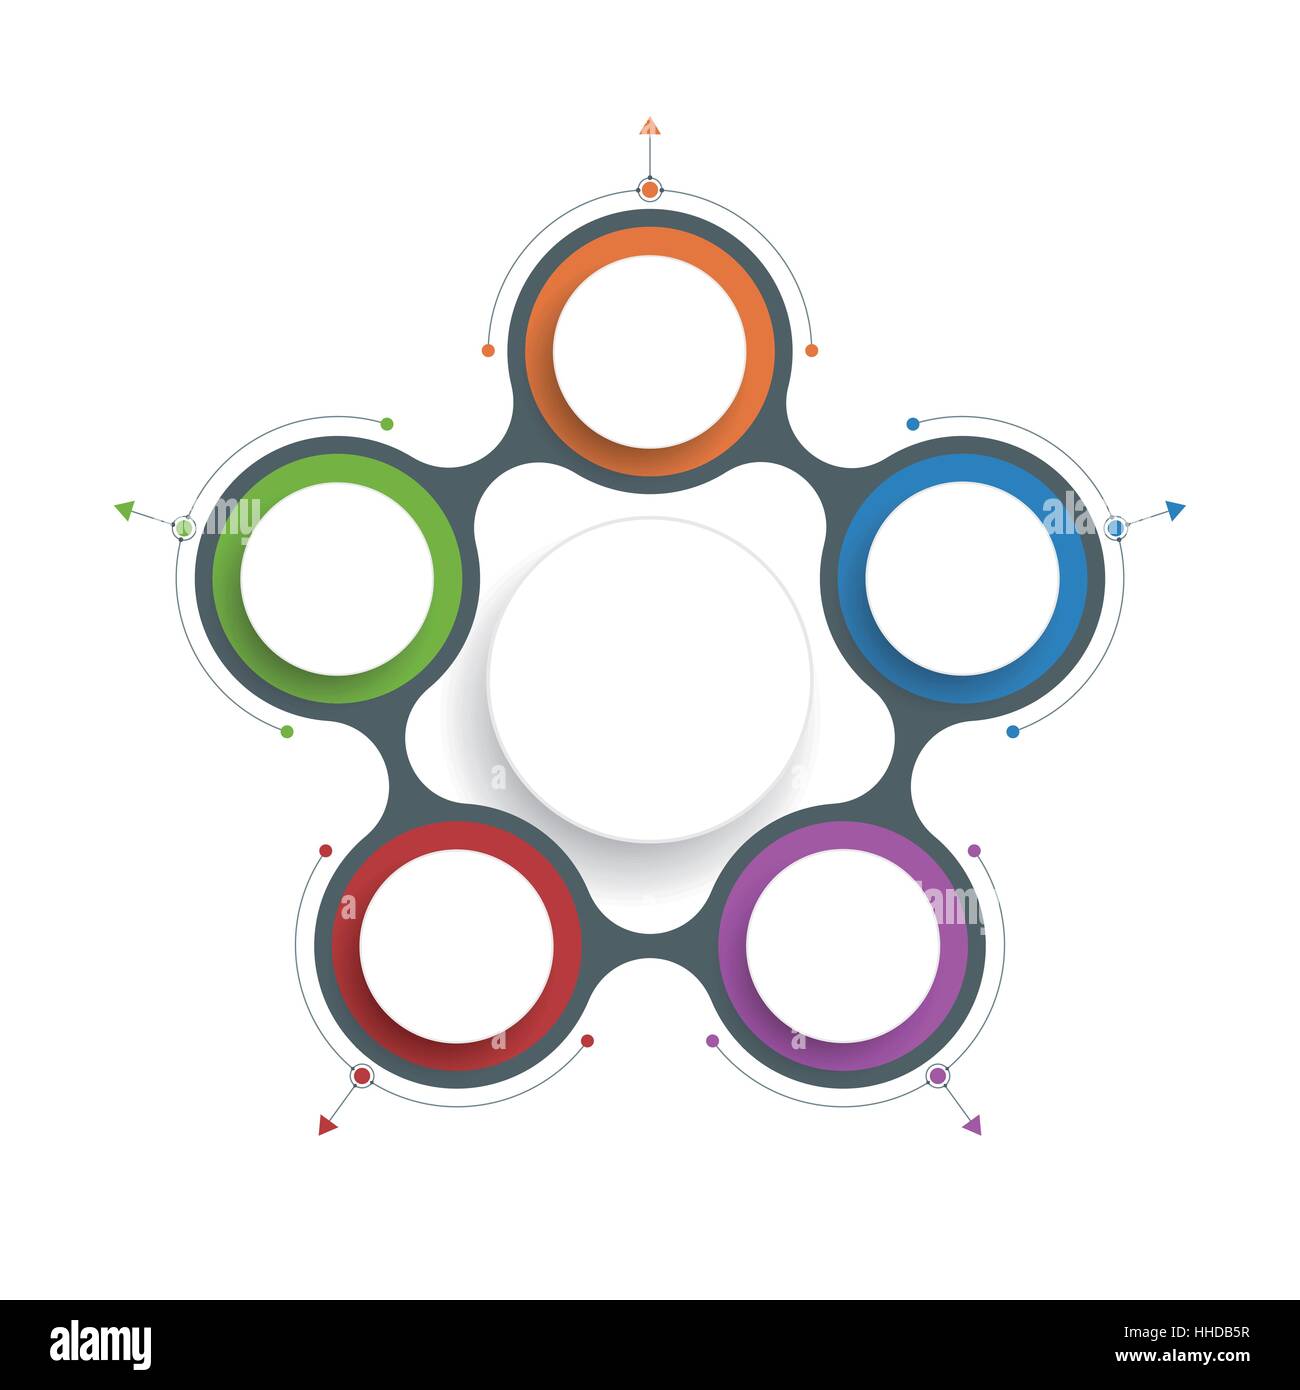 Vektor Infografiken Vorlagen mit 3D-Papier Etikett, Integrierte Kreise mit Linien und Pfeile Hintergrund. Leerzeichen für Inhalt, Business, Infografik Stock Vektor